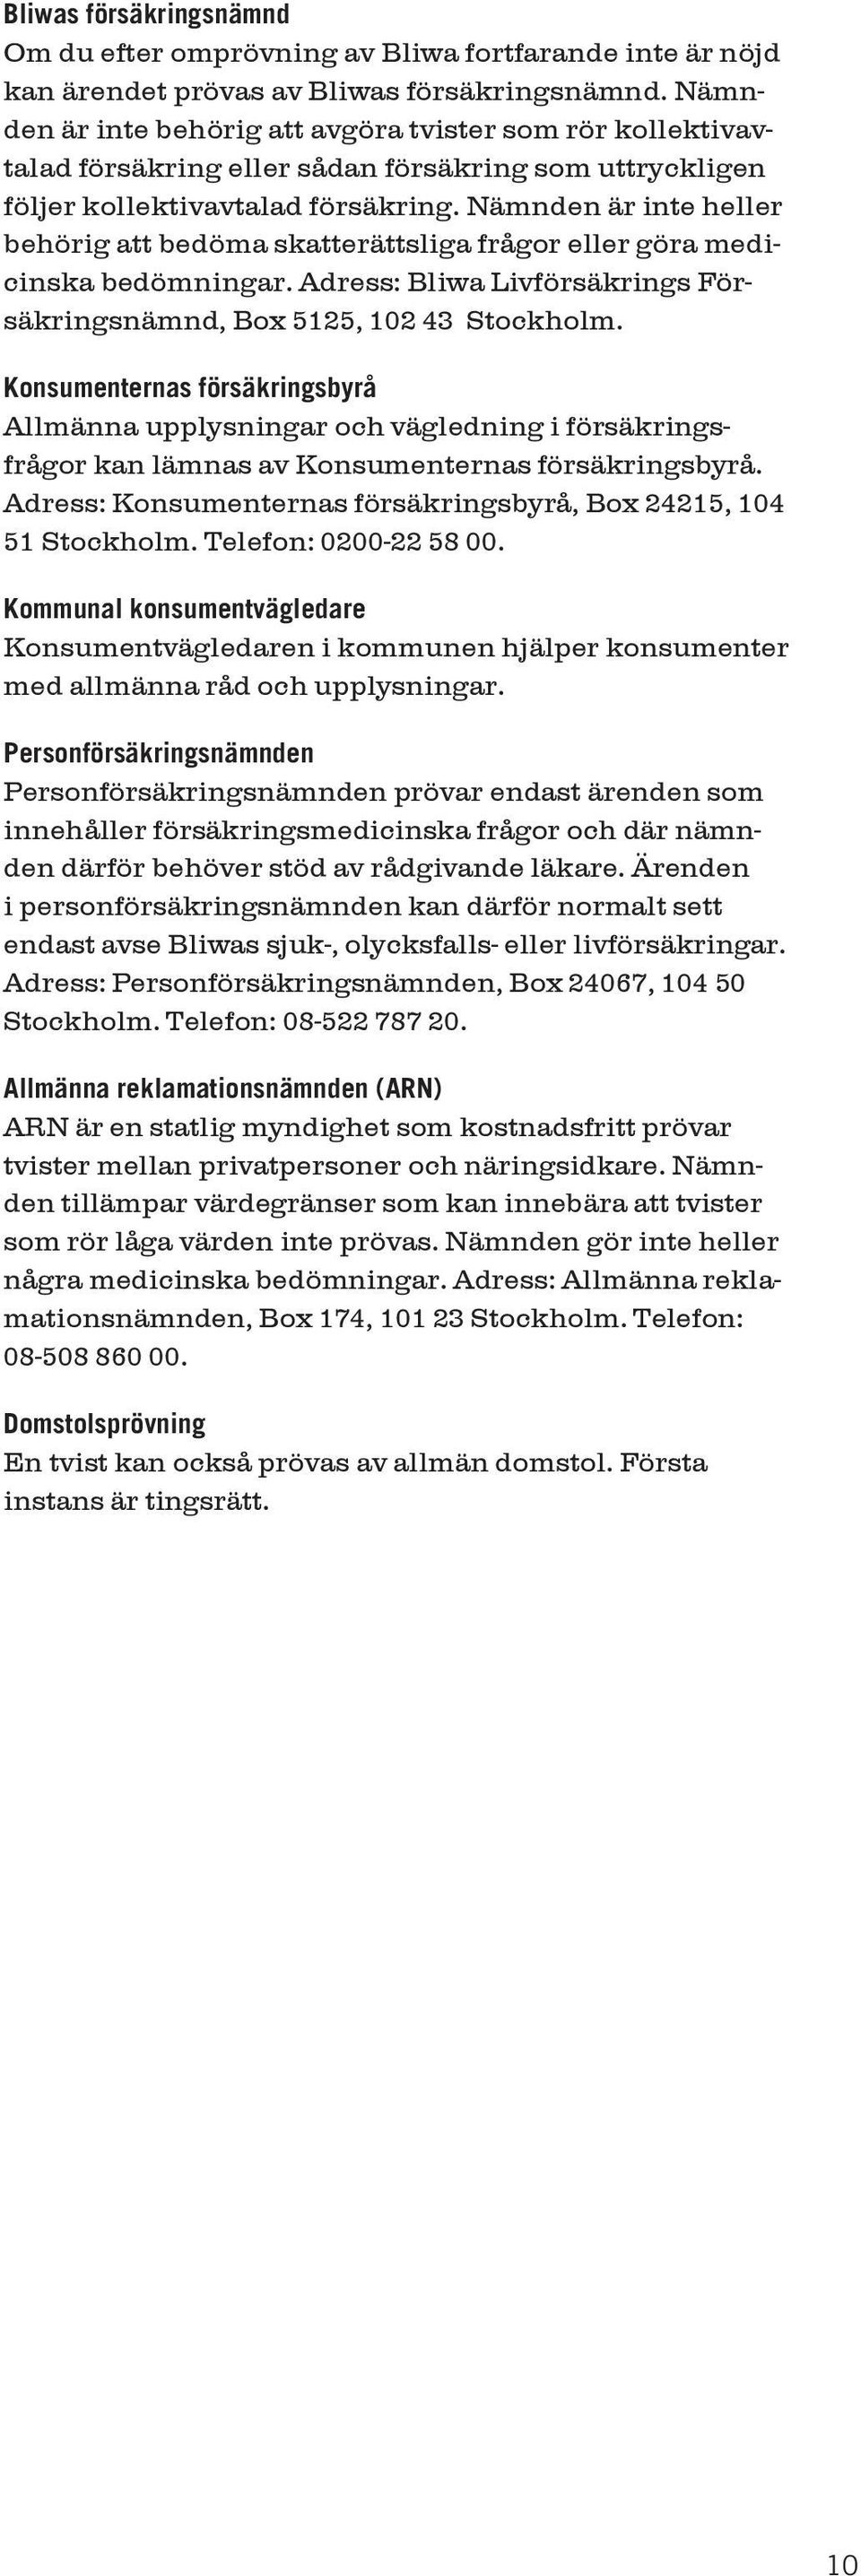 Nämnden är inte heller behörig att bedöma skatterättsliga frågor eller göra medicinska bedömningar. Adress: Bliwa Livförsäkrings Försäkringsnämnd, Box 5125, 102 43 Stockholm.